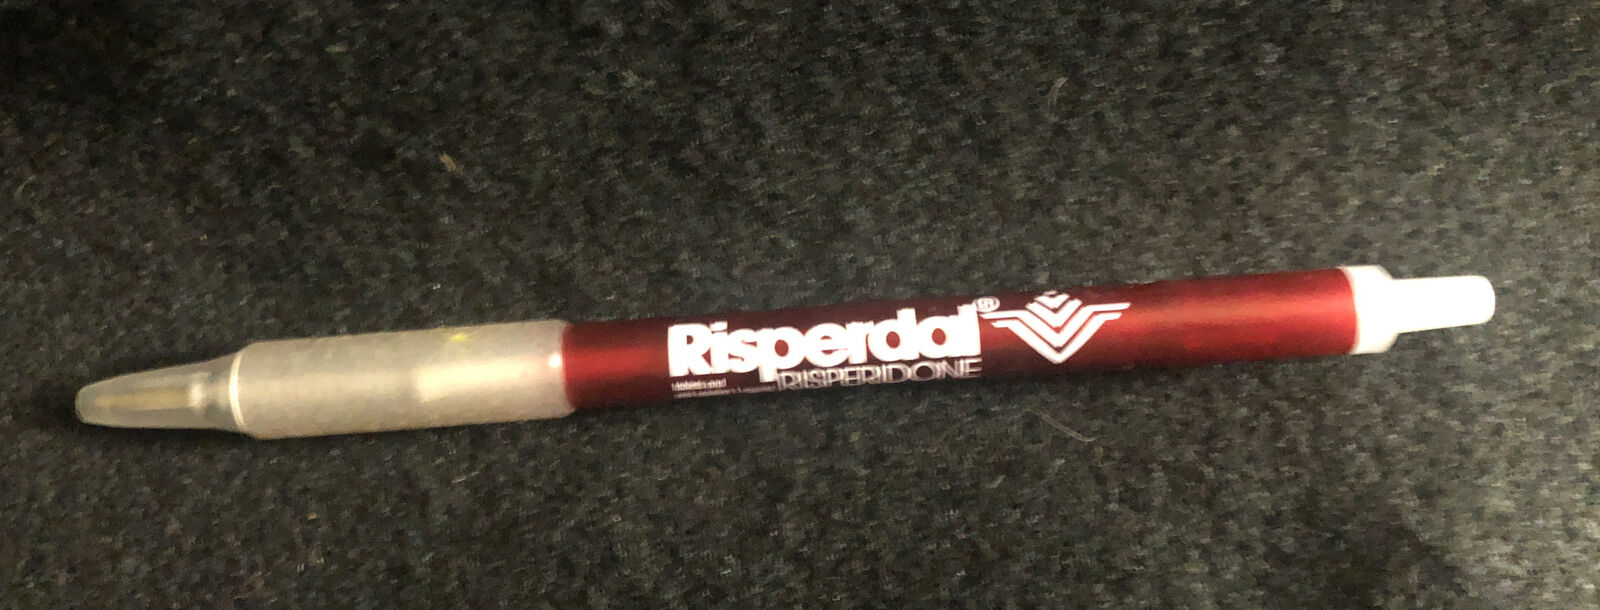 Risperdal Drug Rep Pharmaceutical Pen Pharma Advertising Risperidone